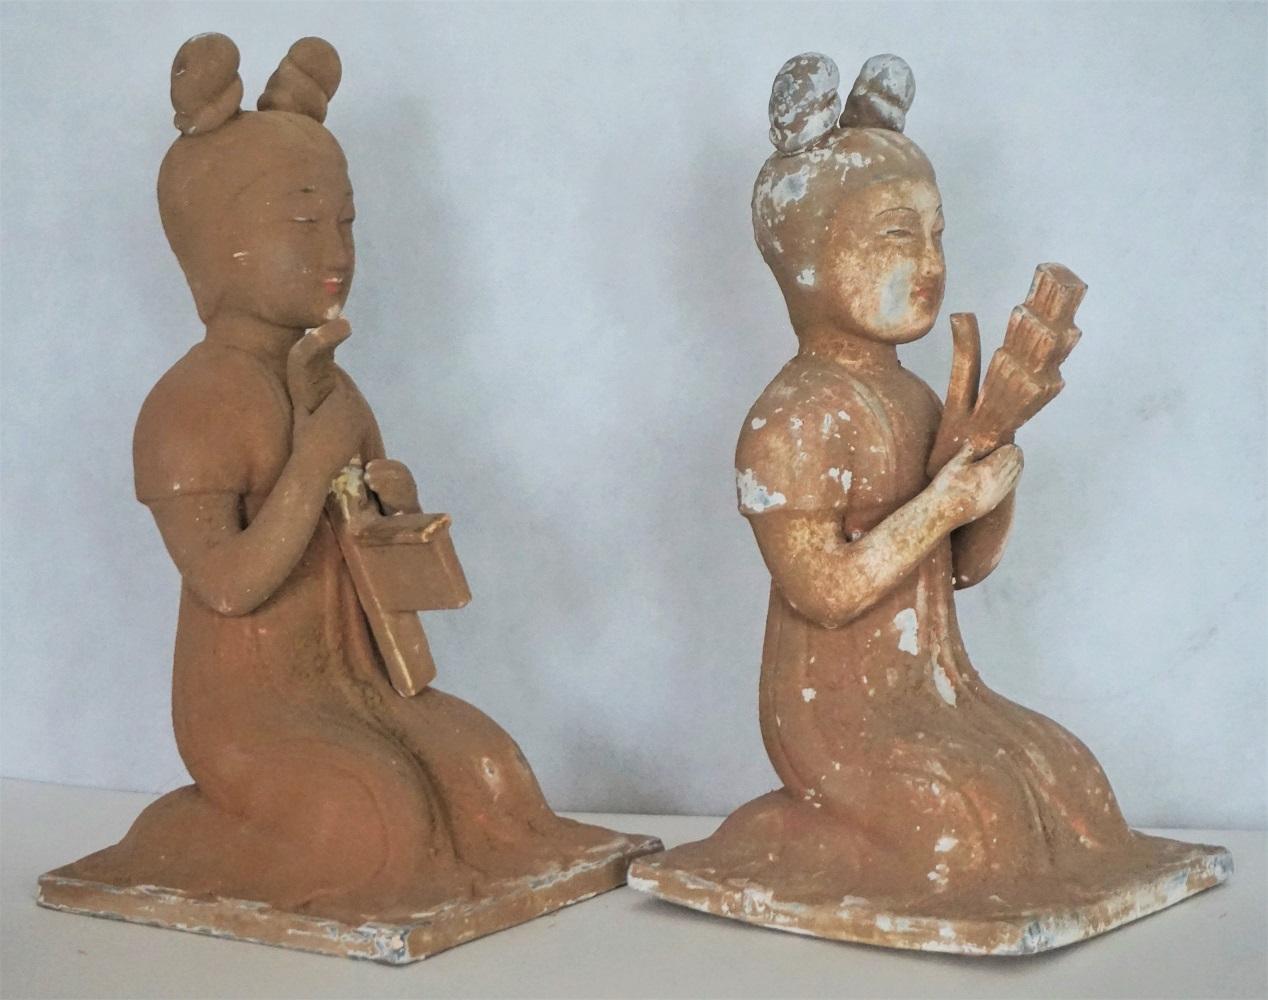 Paire de sculptures féminines japonaises en terre cuite faites à la main avec des instruments de musique, début du 20e siècle. Ces magnifiques sculptures sont destinées à un usage intérieur et extérieur.
Les deux pièces sont en excellent état